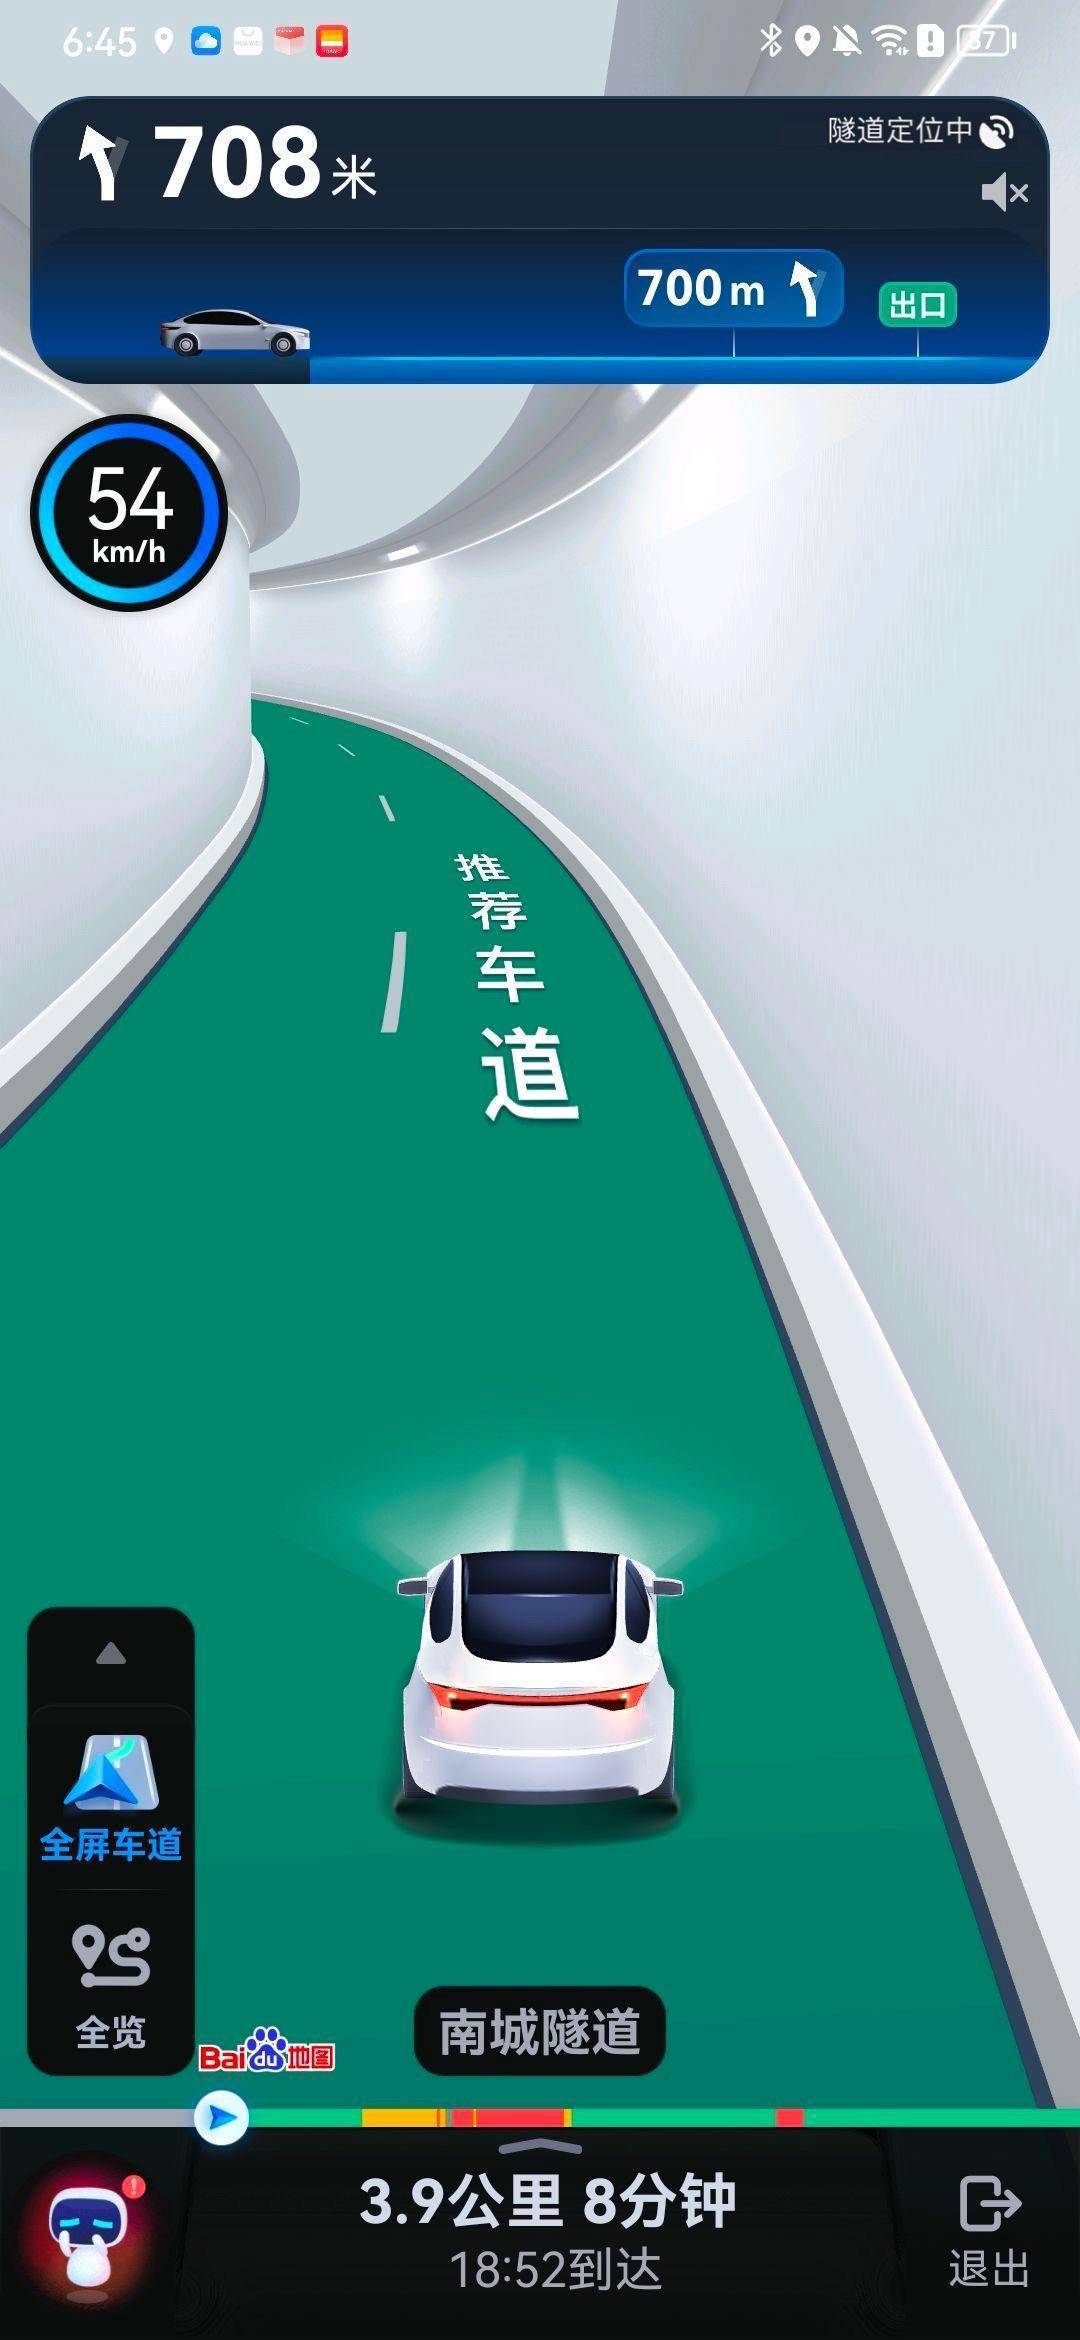 高德业内率先实现城市内全程车道级导航，并首先在北京市开展内测 - 新智派